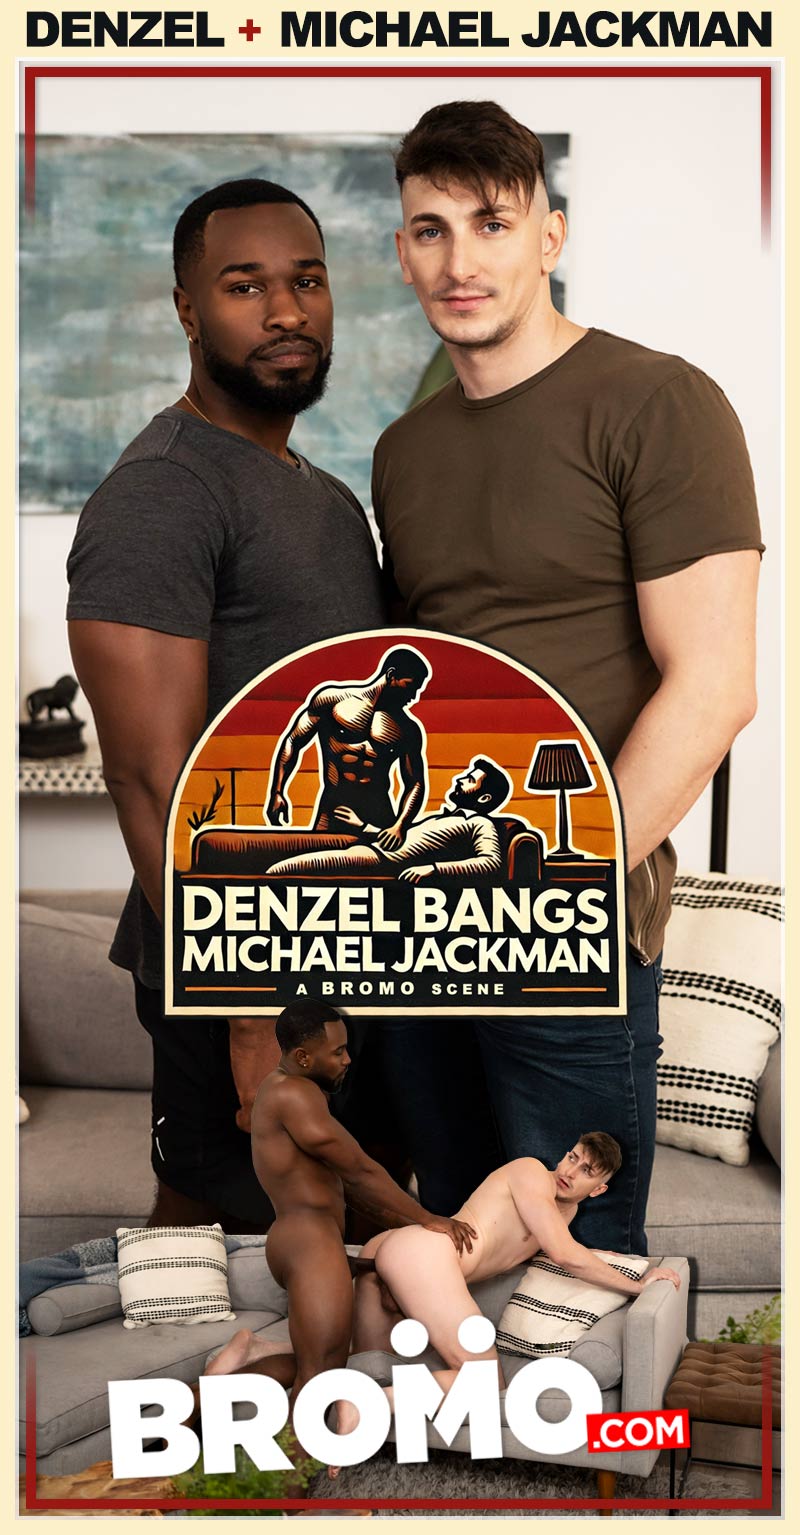 Denzel Bangs Michael Jackman at BROMO